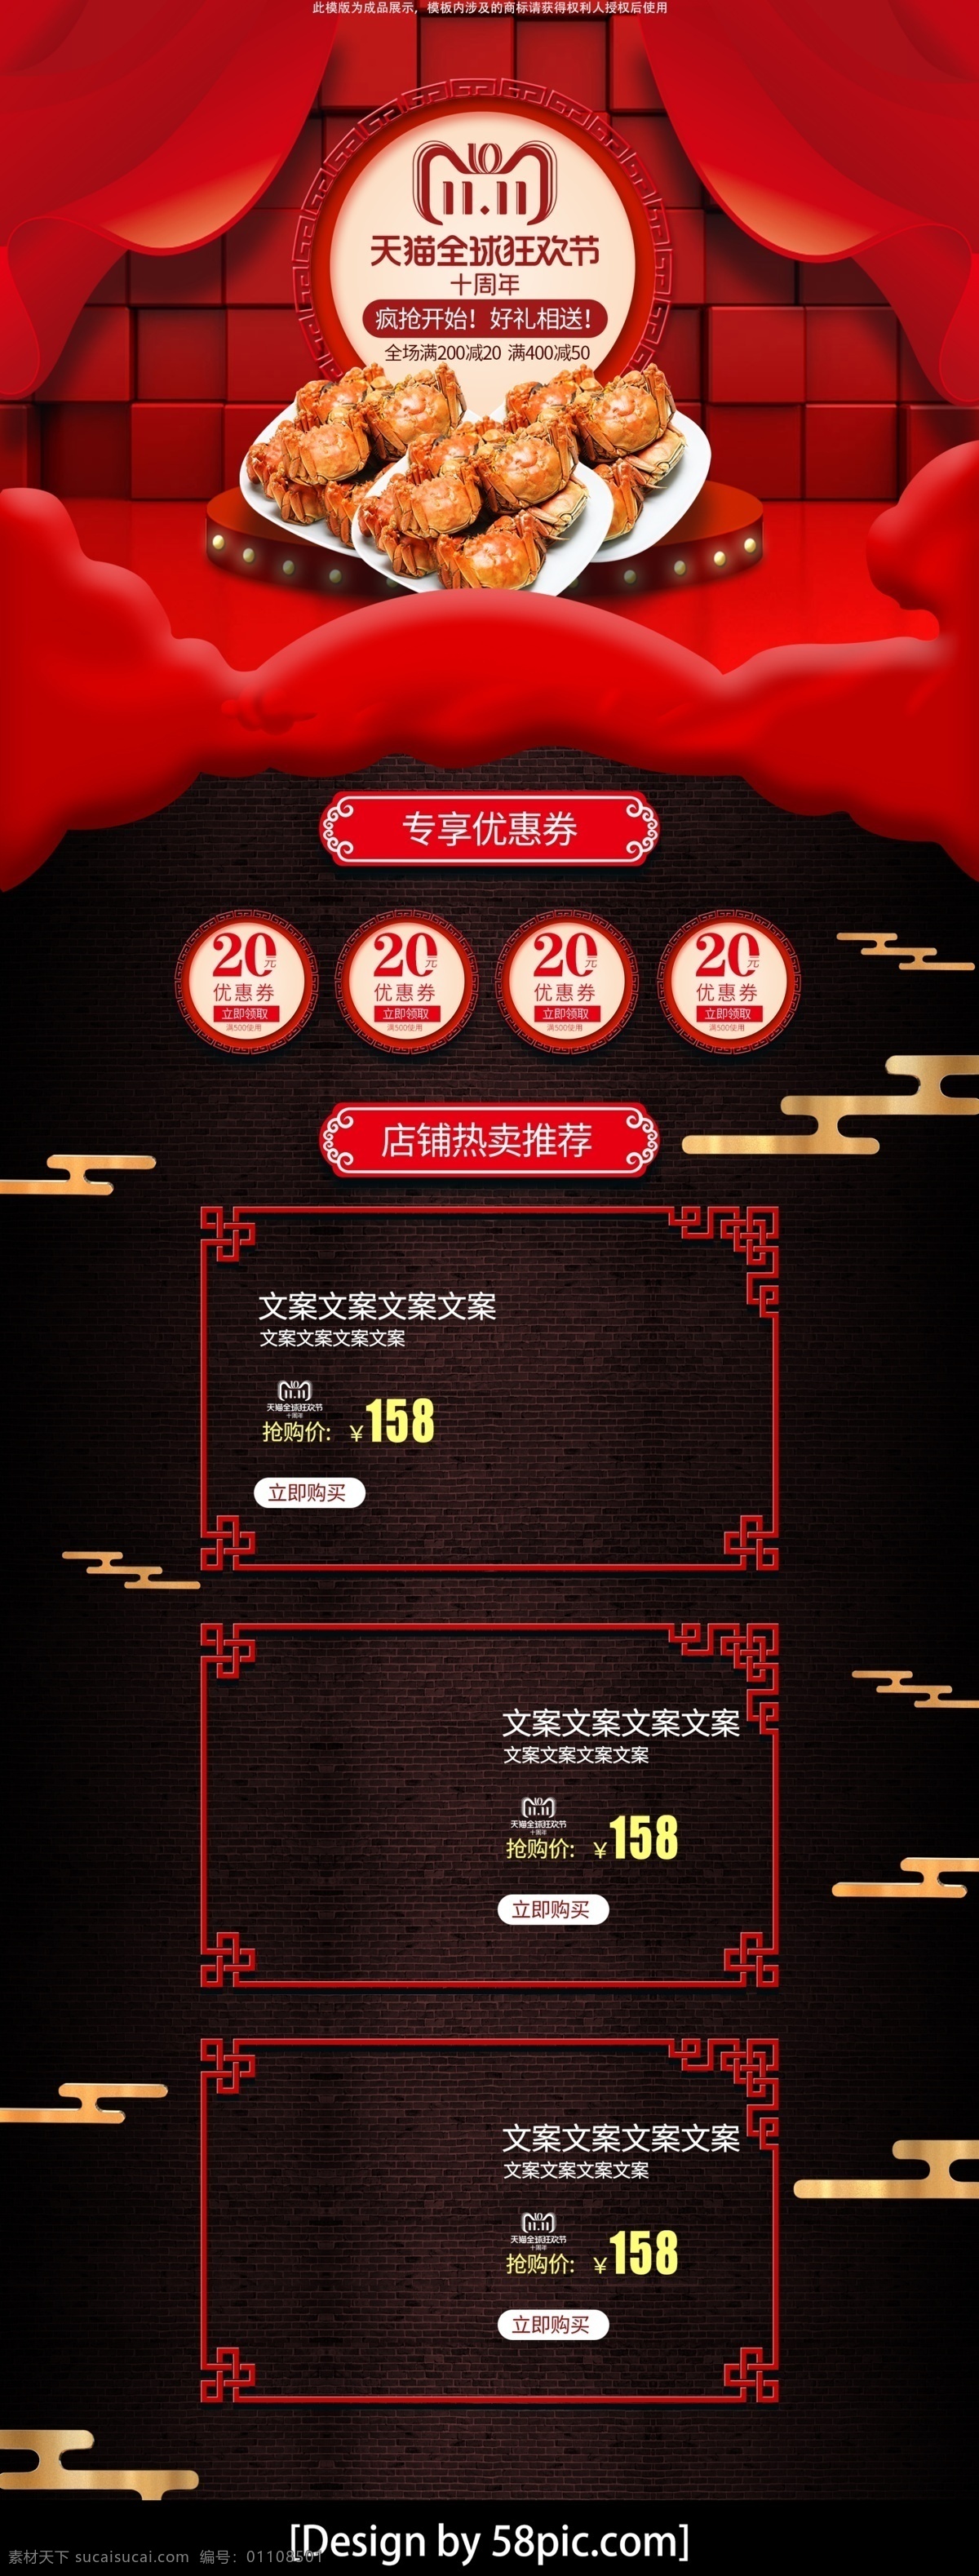 中国 风 双 页面 红色 食品 大闸蟹 双11 促销 中国风 双十一首页 红色页面